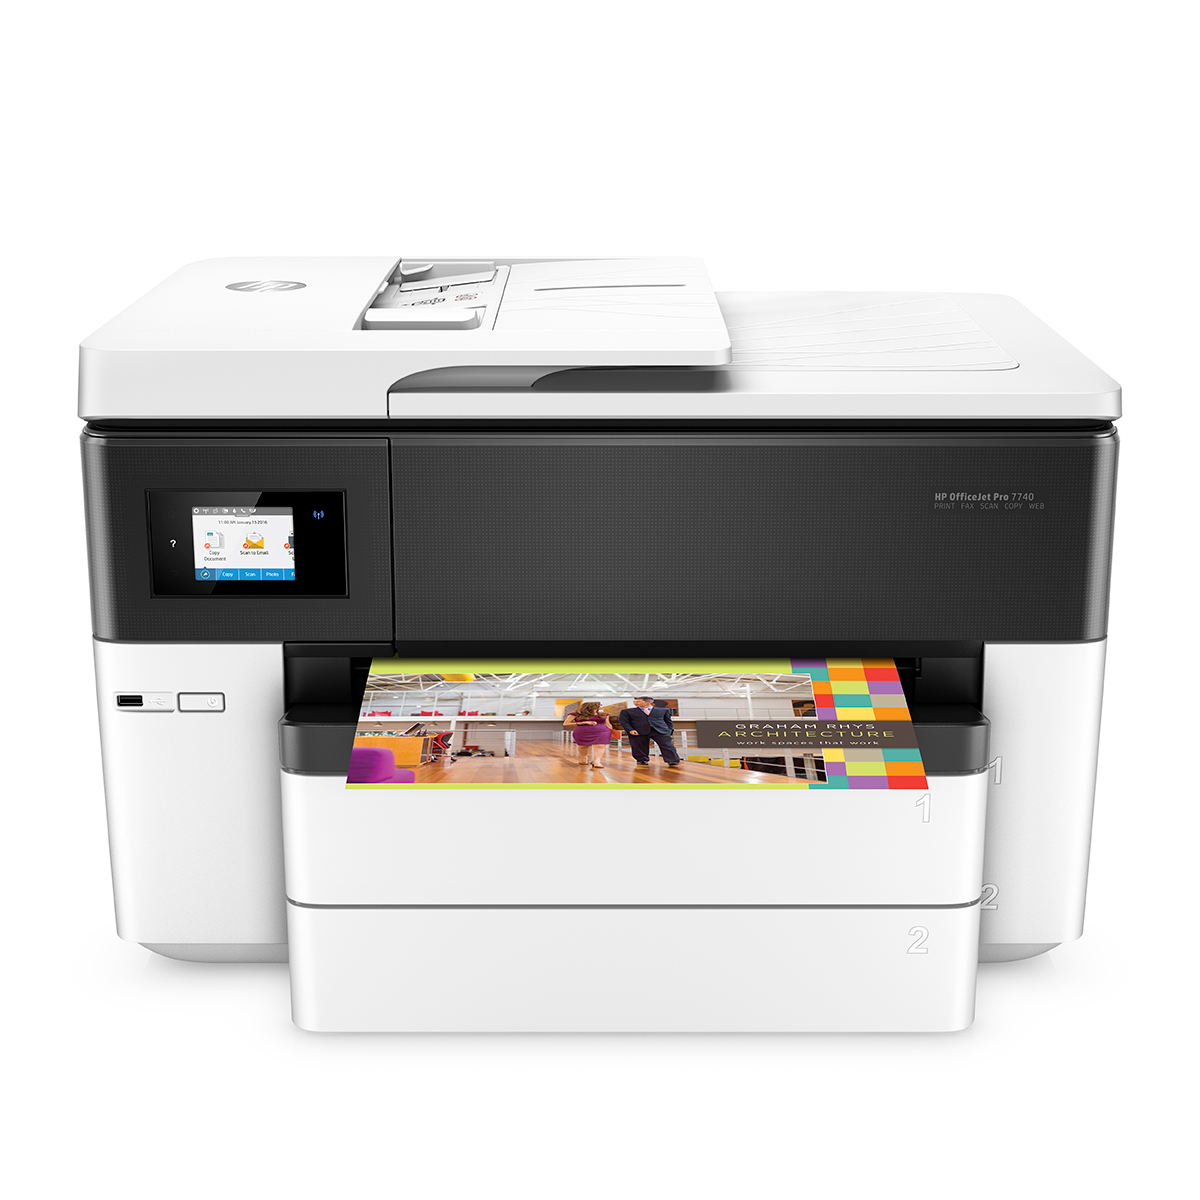 Impresora Multifuncional Hp Officejet 7740 Dúplex / Inyección de tinta / Color / WiFi / USB / Ethernet